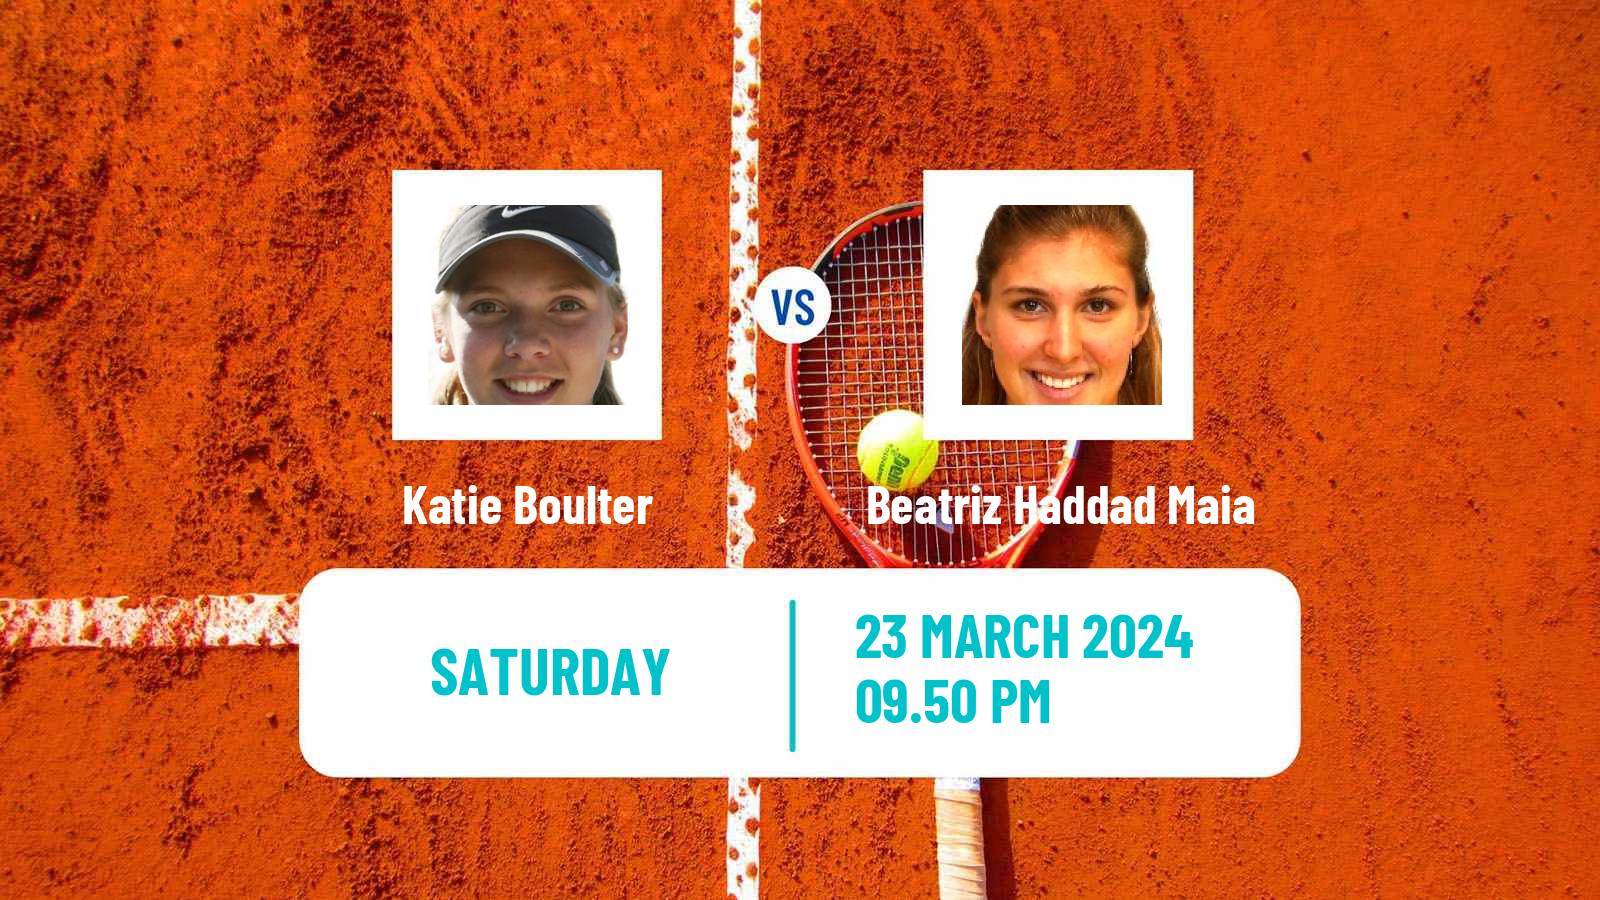 Tennis WTA Miami Katie Boulter - Beatriz Haddad Maia